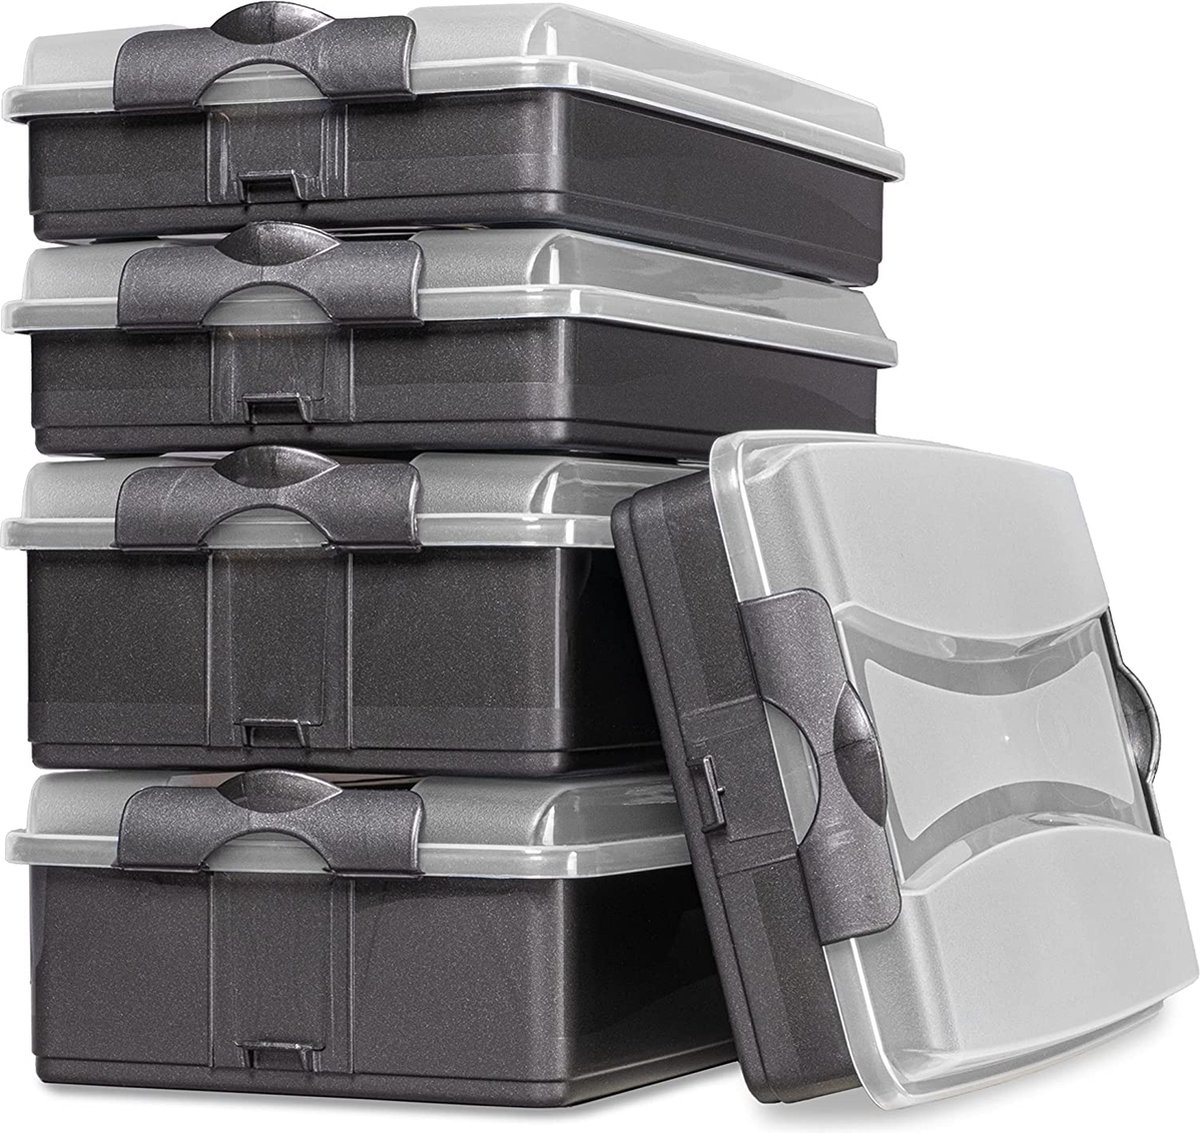 Hausfelder Opmaakbox met deksel, 5-delige set, stapelbare vershouddozen, worstbox voor de koelkast, 3 x plat, 2 x hoog